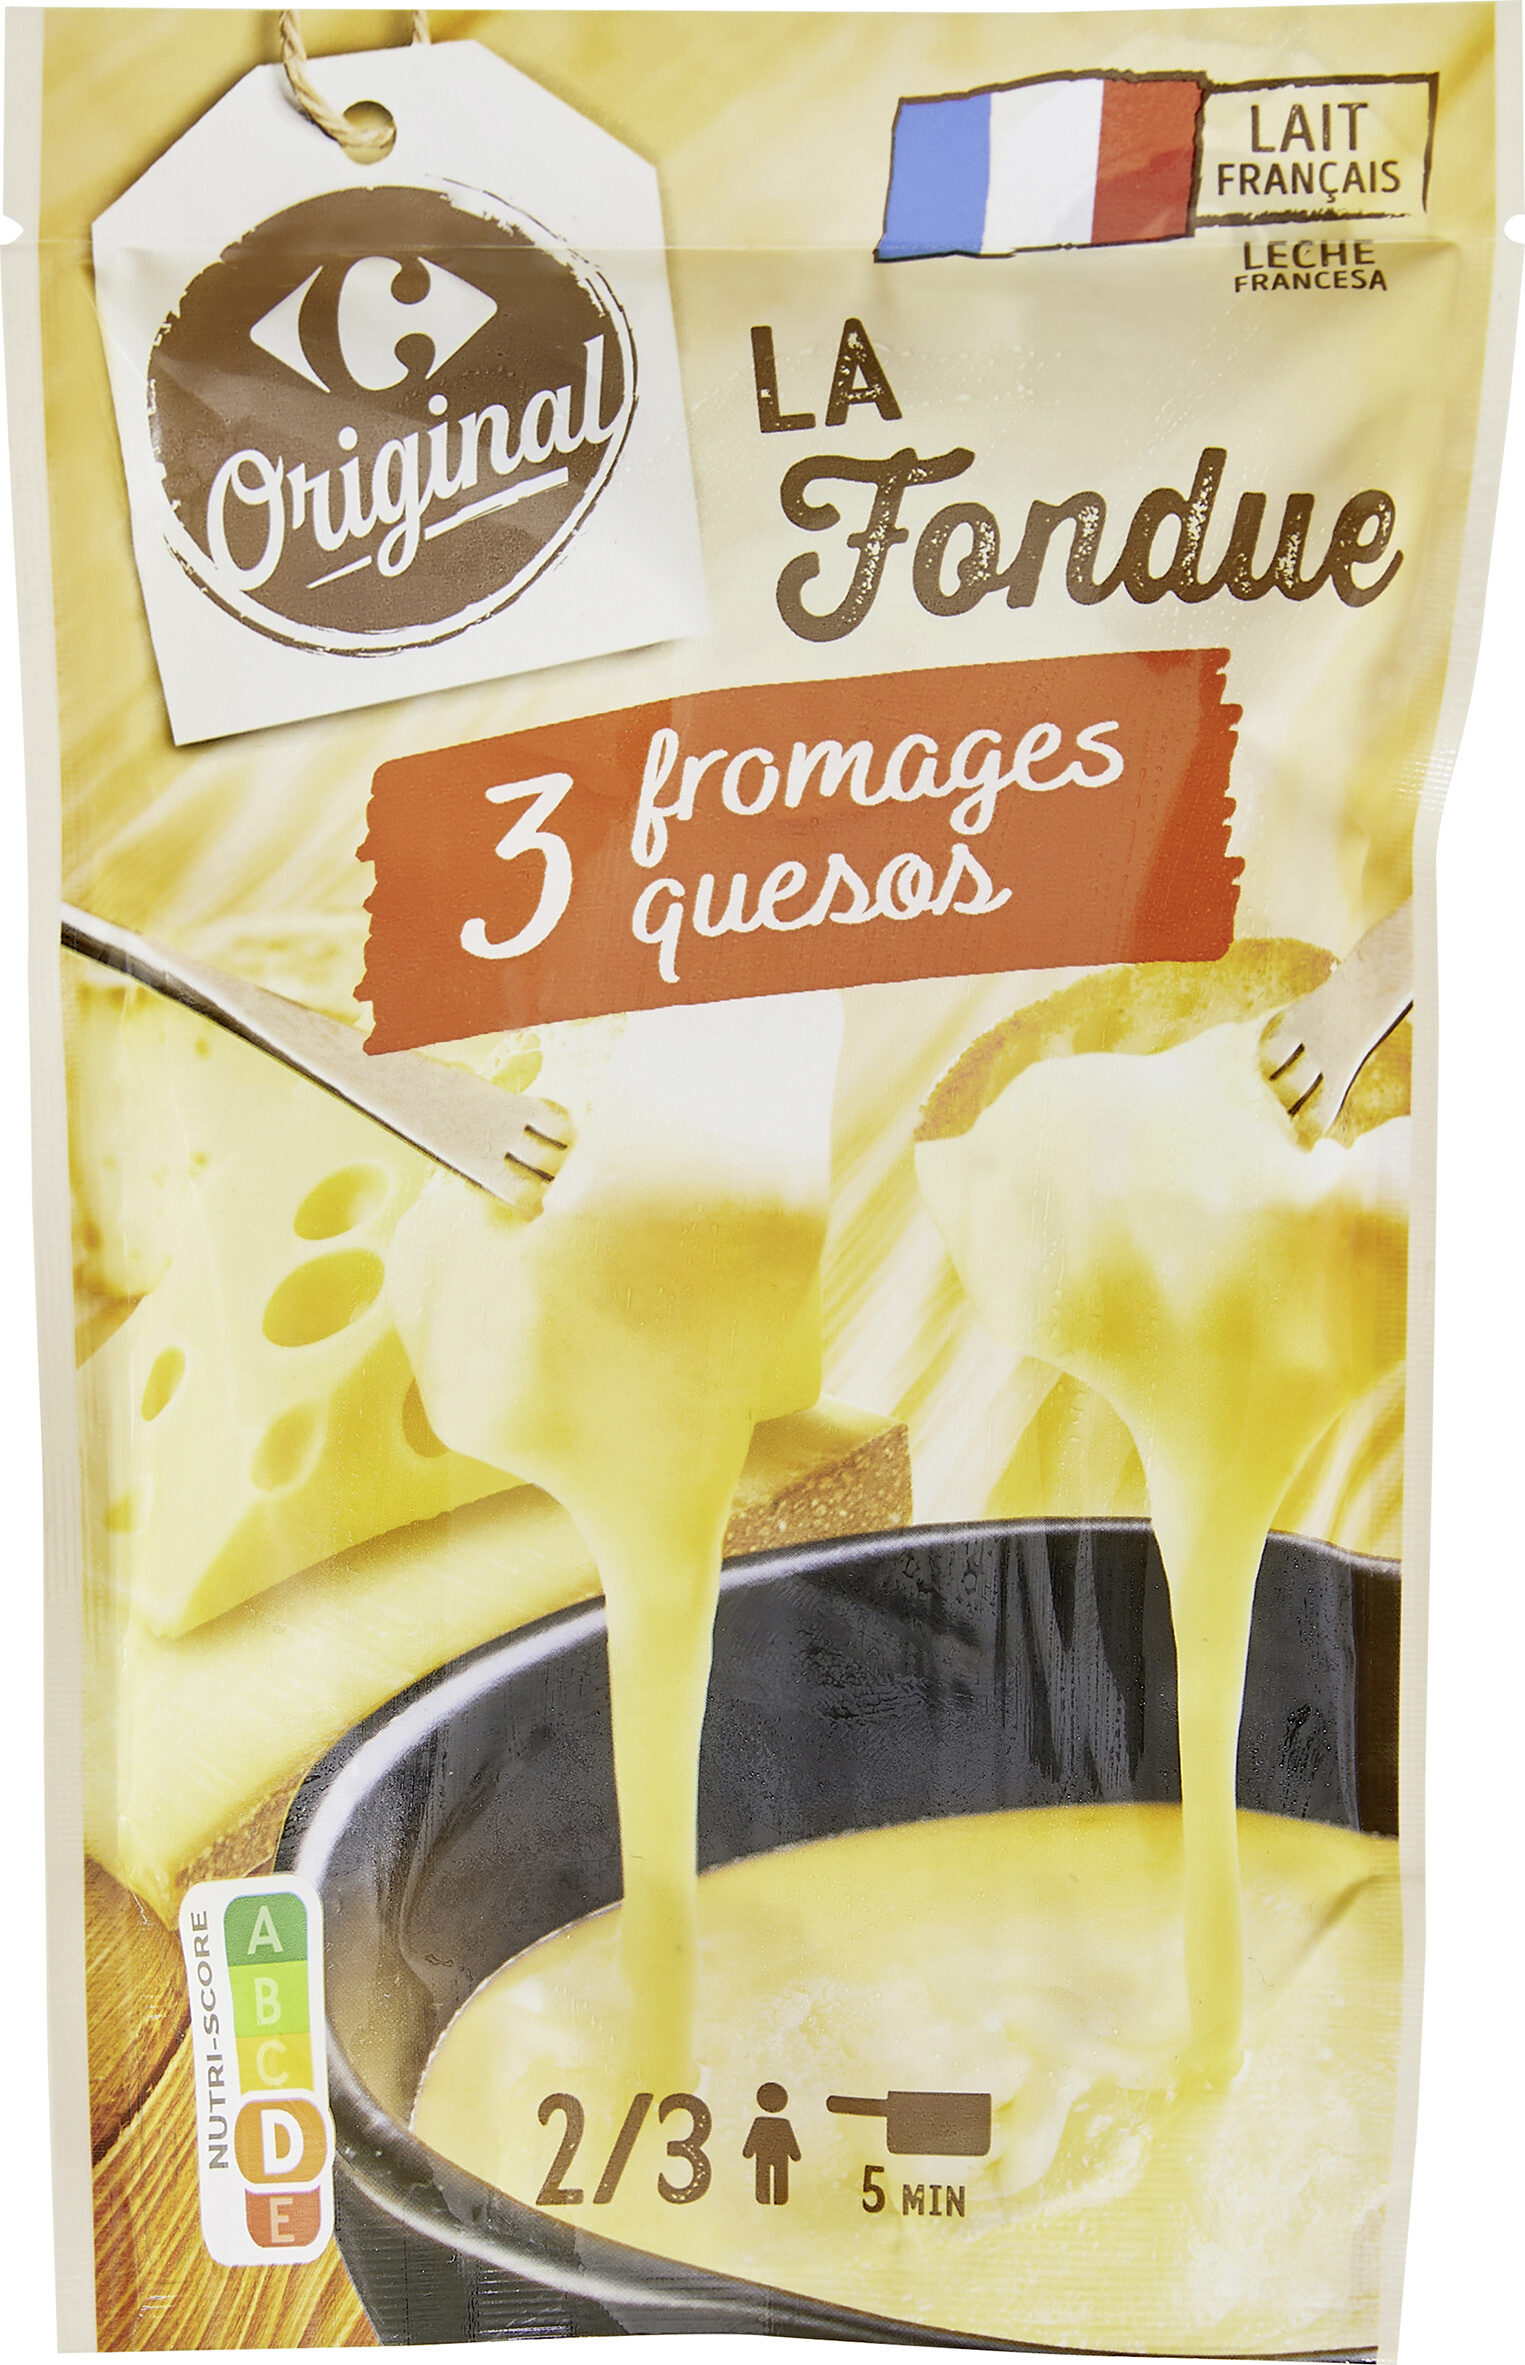 La Fondue 3 fromages - Produktua - fr